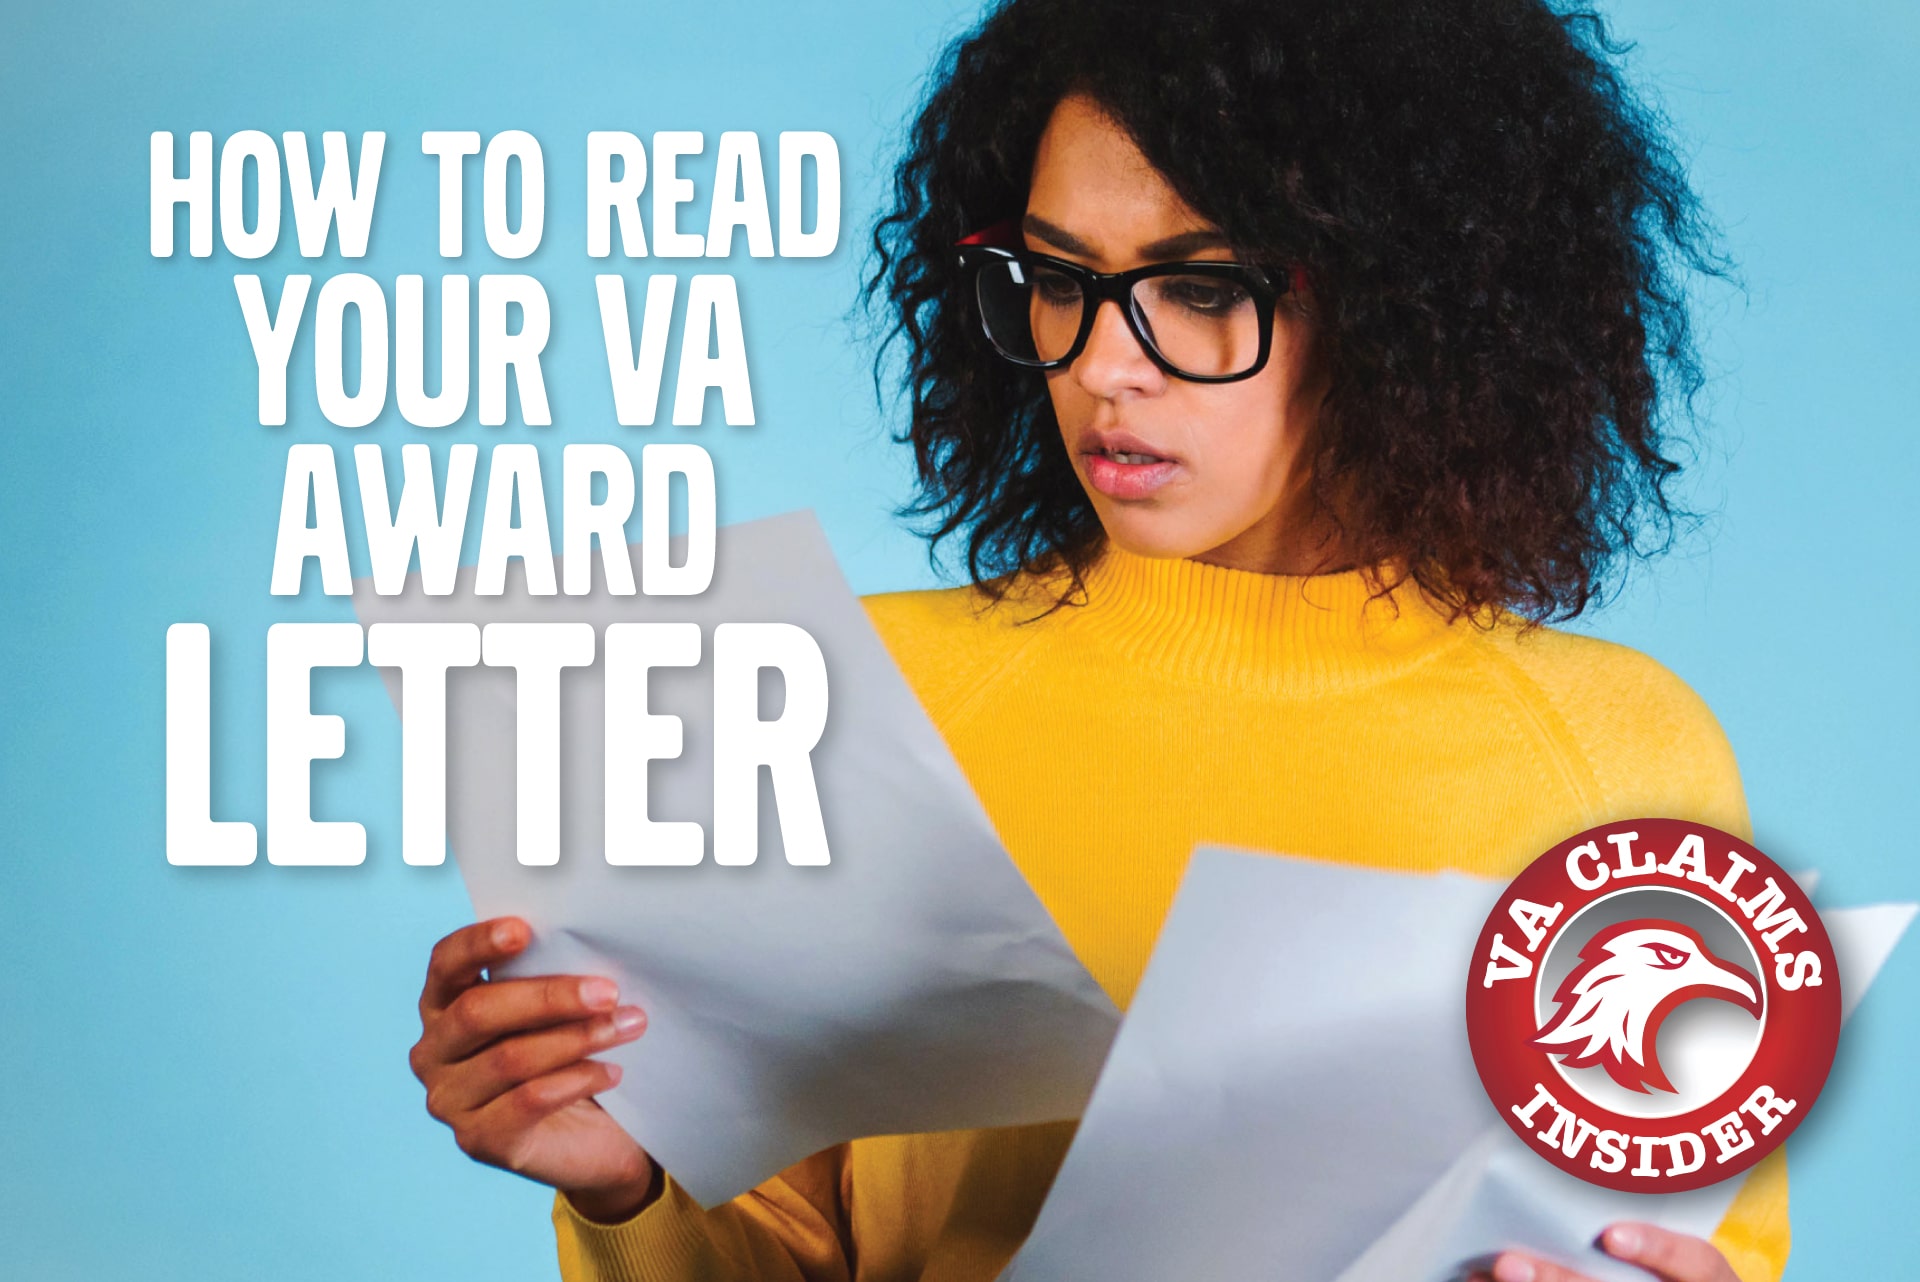 How Do I Read My VA Award Letter? Blog How to Read Your VA Award Letter min